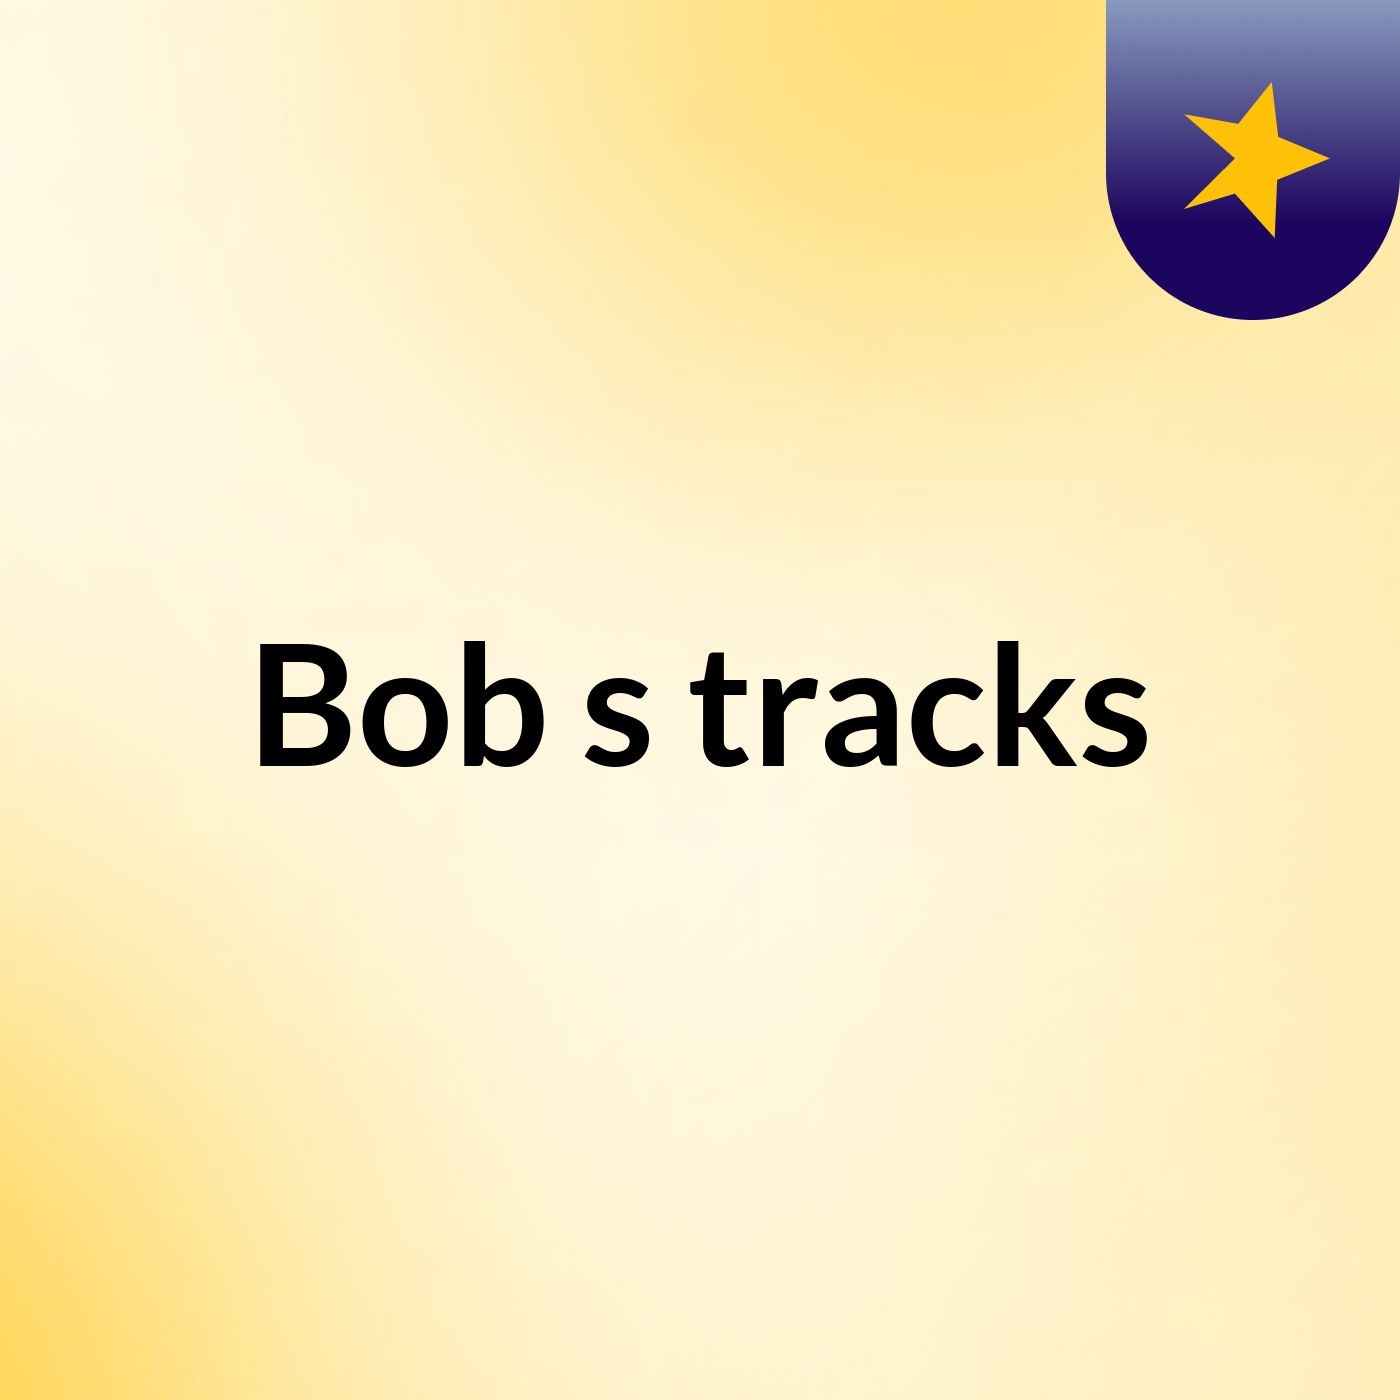 Bob's tracks